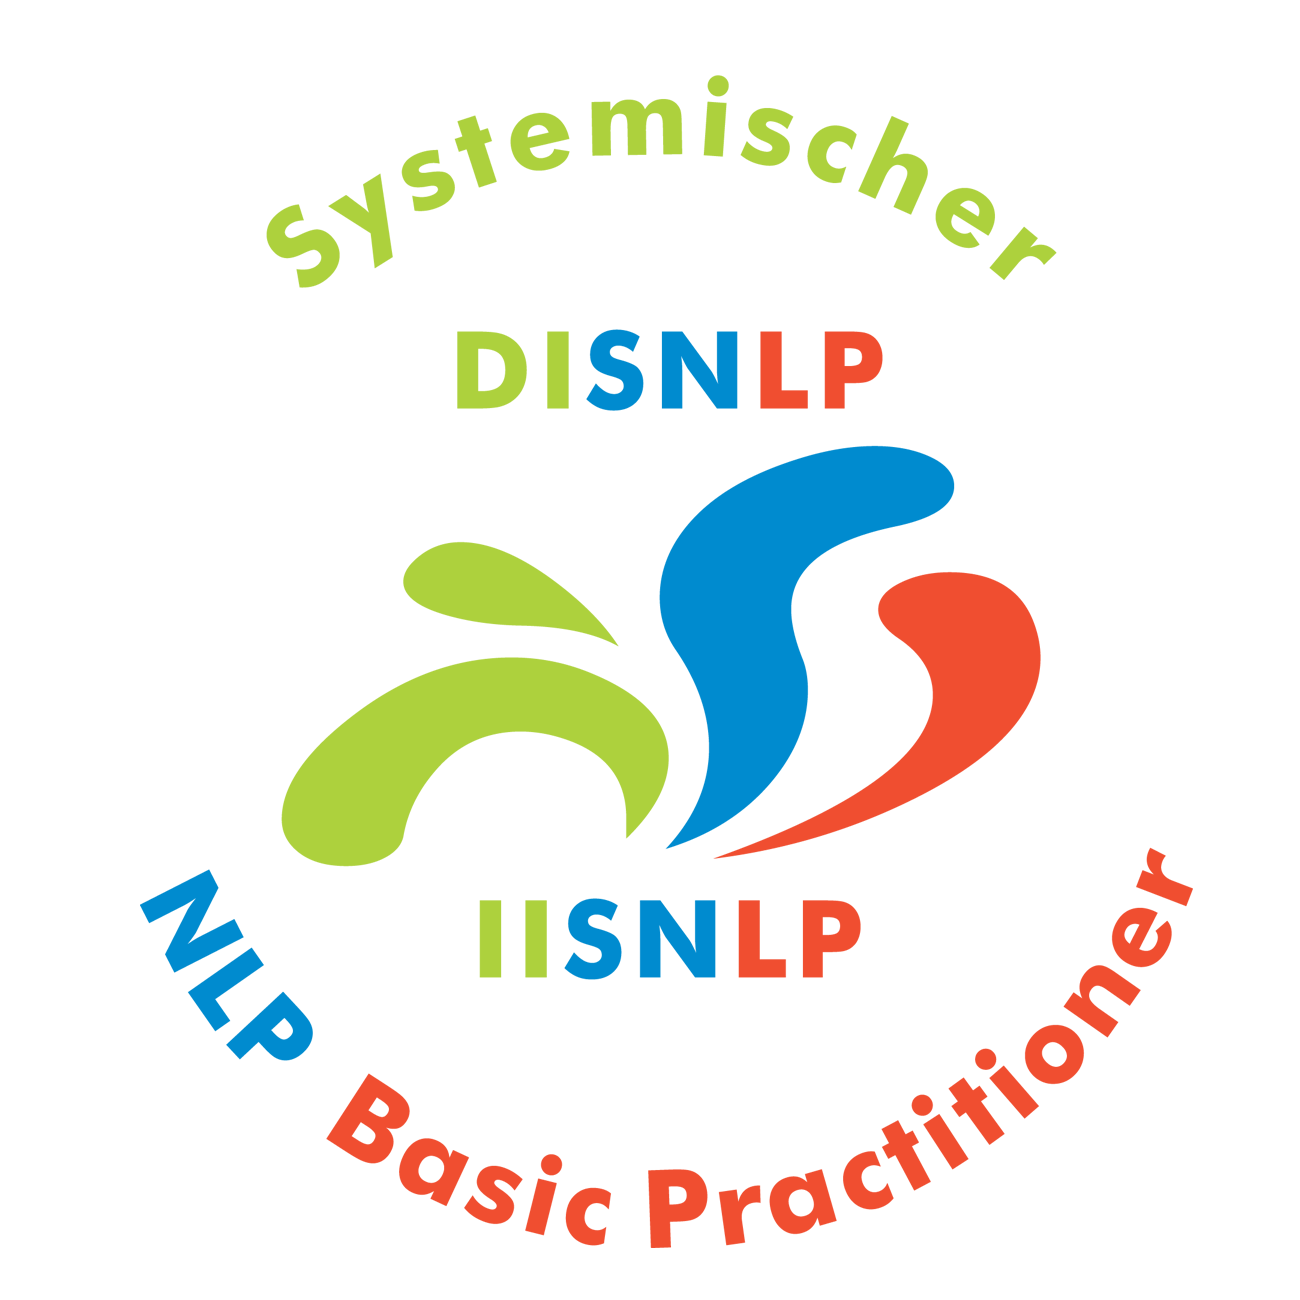 Seminar Selbstbewusstsein, Selbstvertrauen, Selbstwert, Selbstsicherheit stärken Rhein Pfalz Kreis mit NLP Coaching Kurs für mehr Selbstbewusstsein